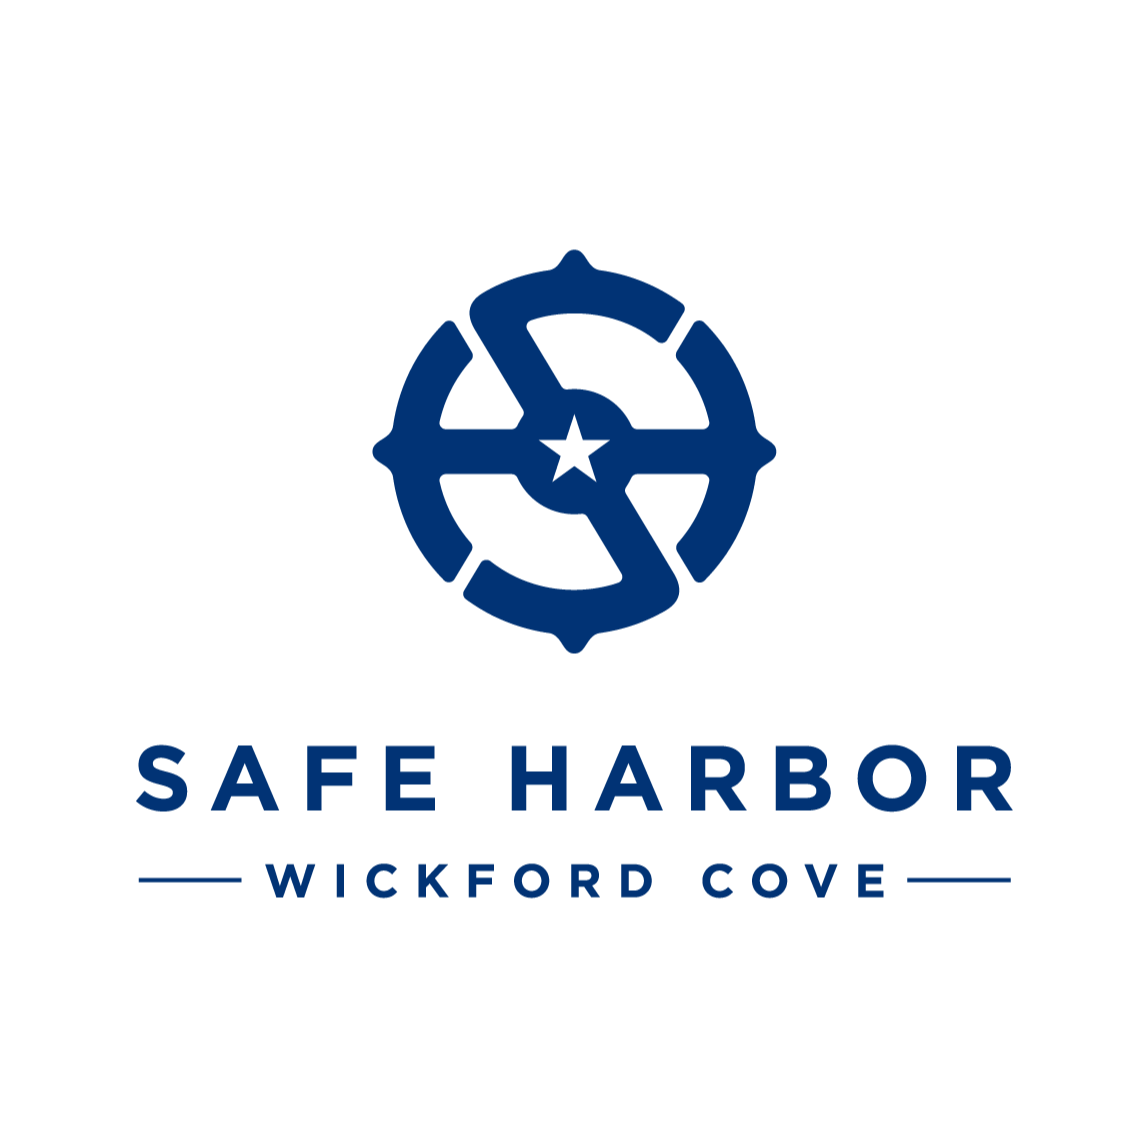 Safe Harbor Wickford Cove